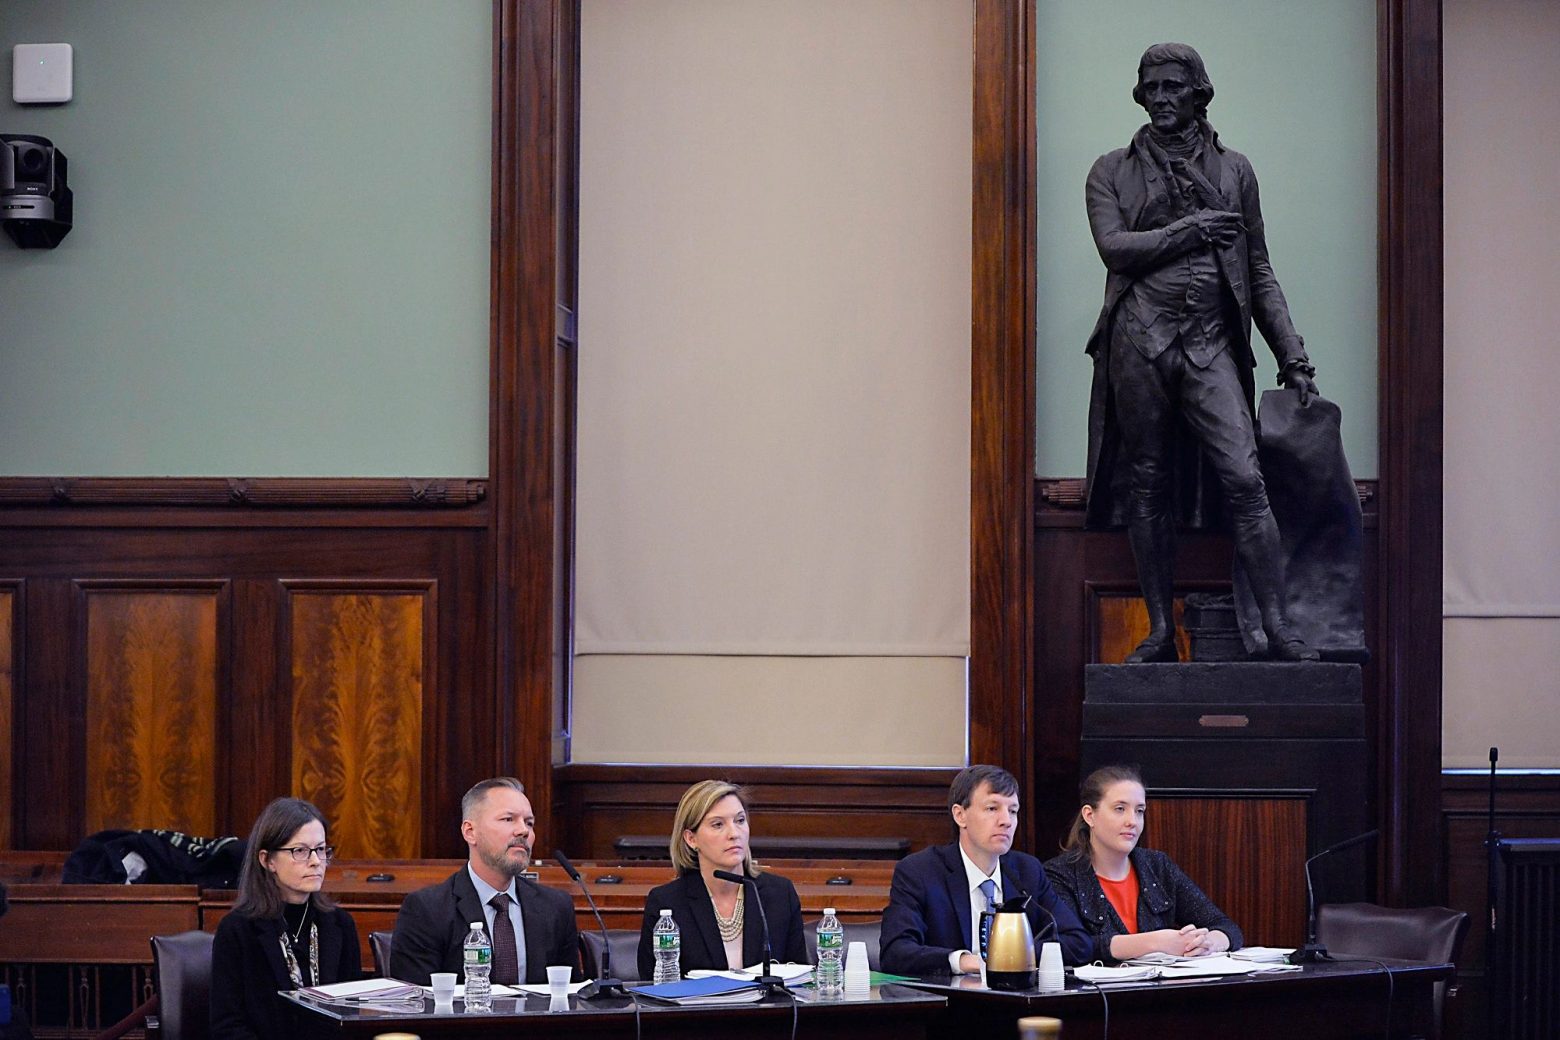 Ιστορική απόφαση – Το άγαλμα του Τζέφερσον απομακρύνθηκε από το Δημαρχείο της Νέας Υόρκης